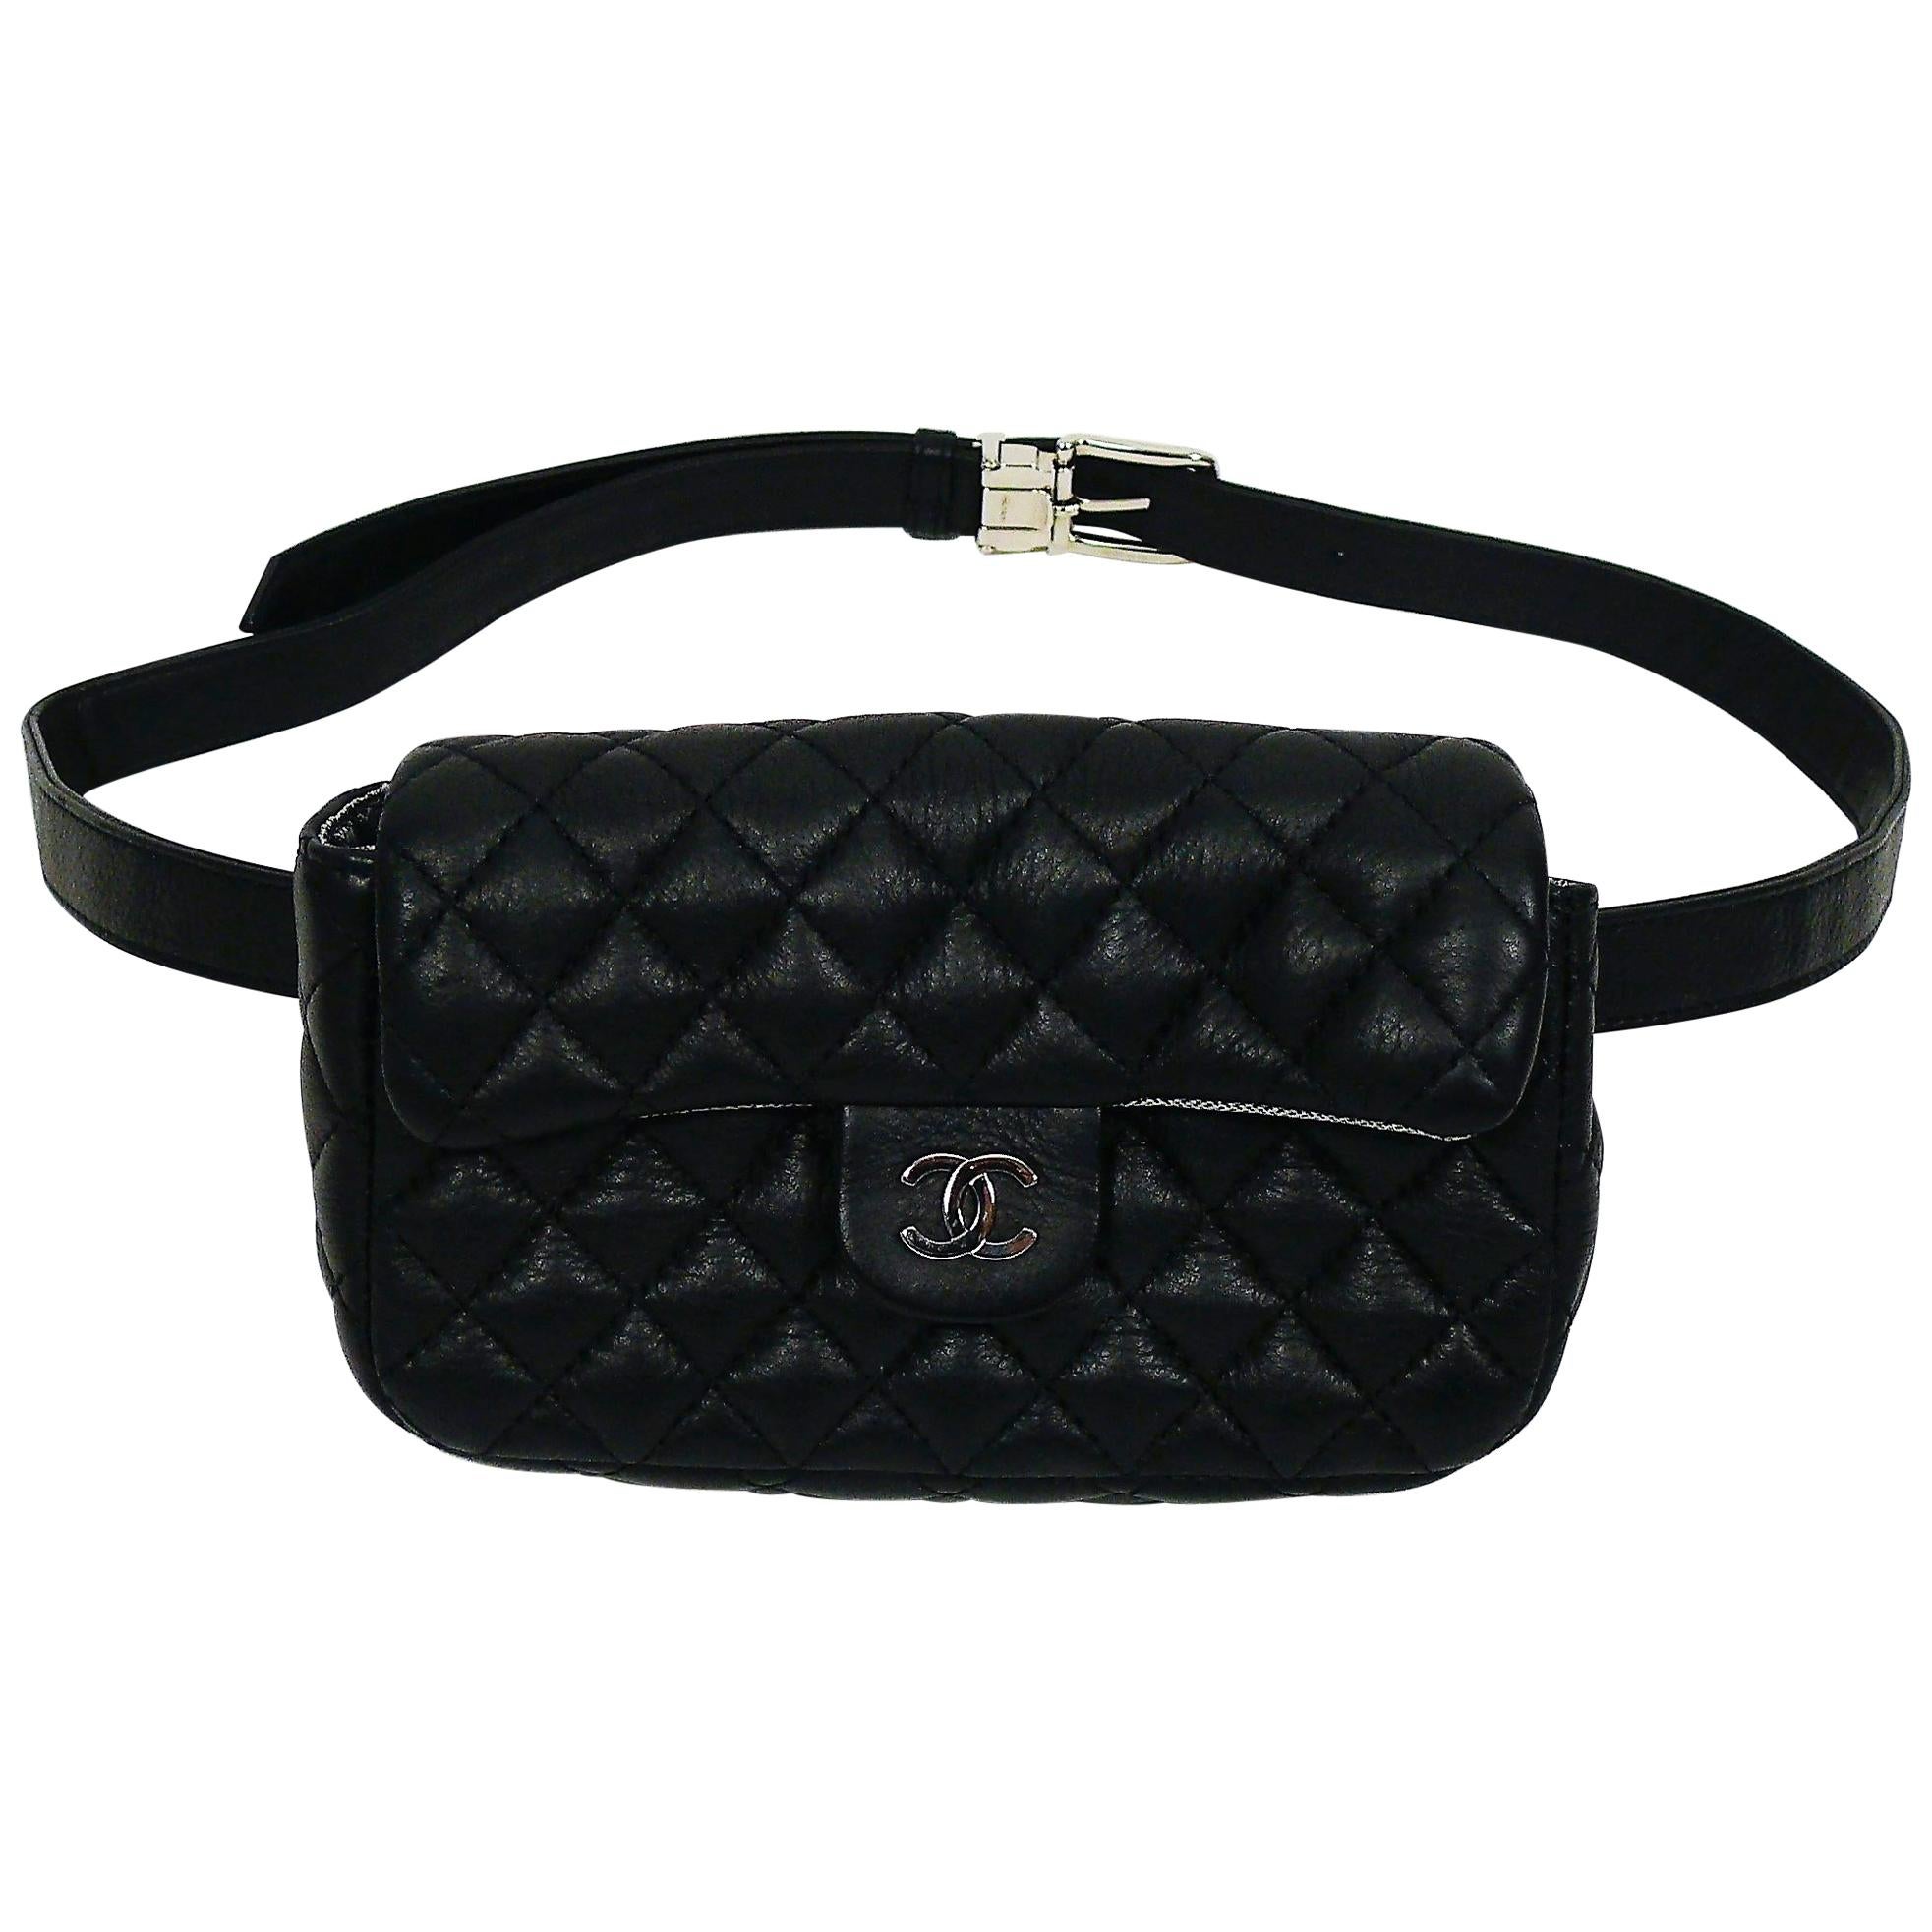 Chanel Uniform Black Quilted Leather Waist-Belt Bag